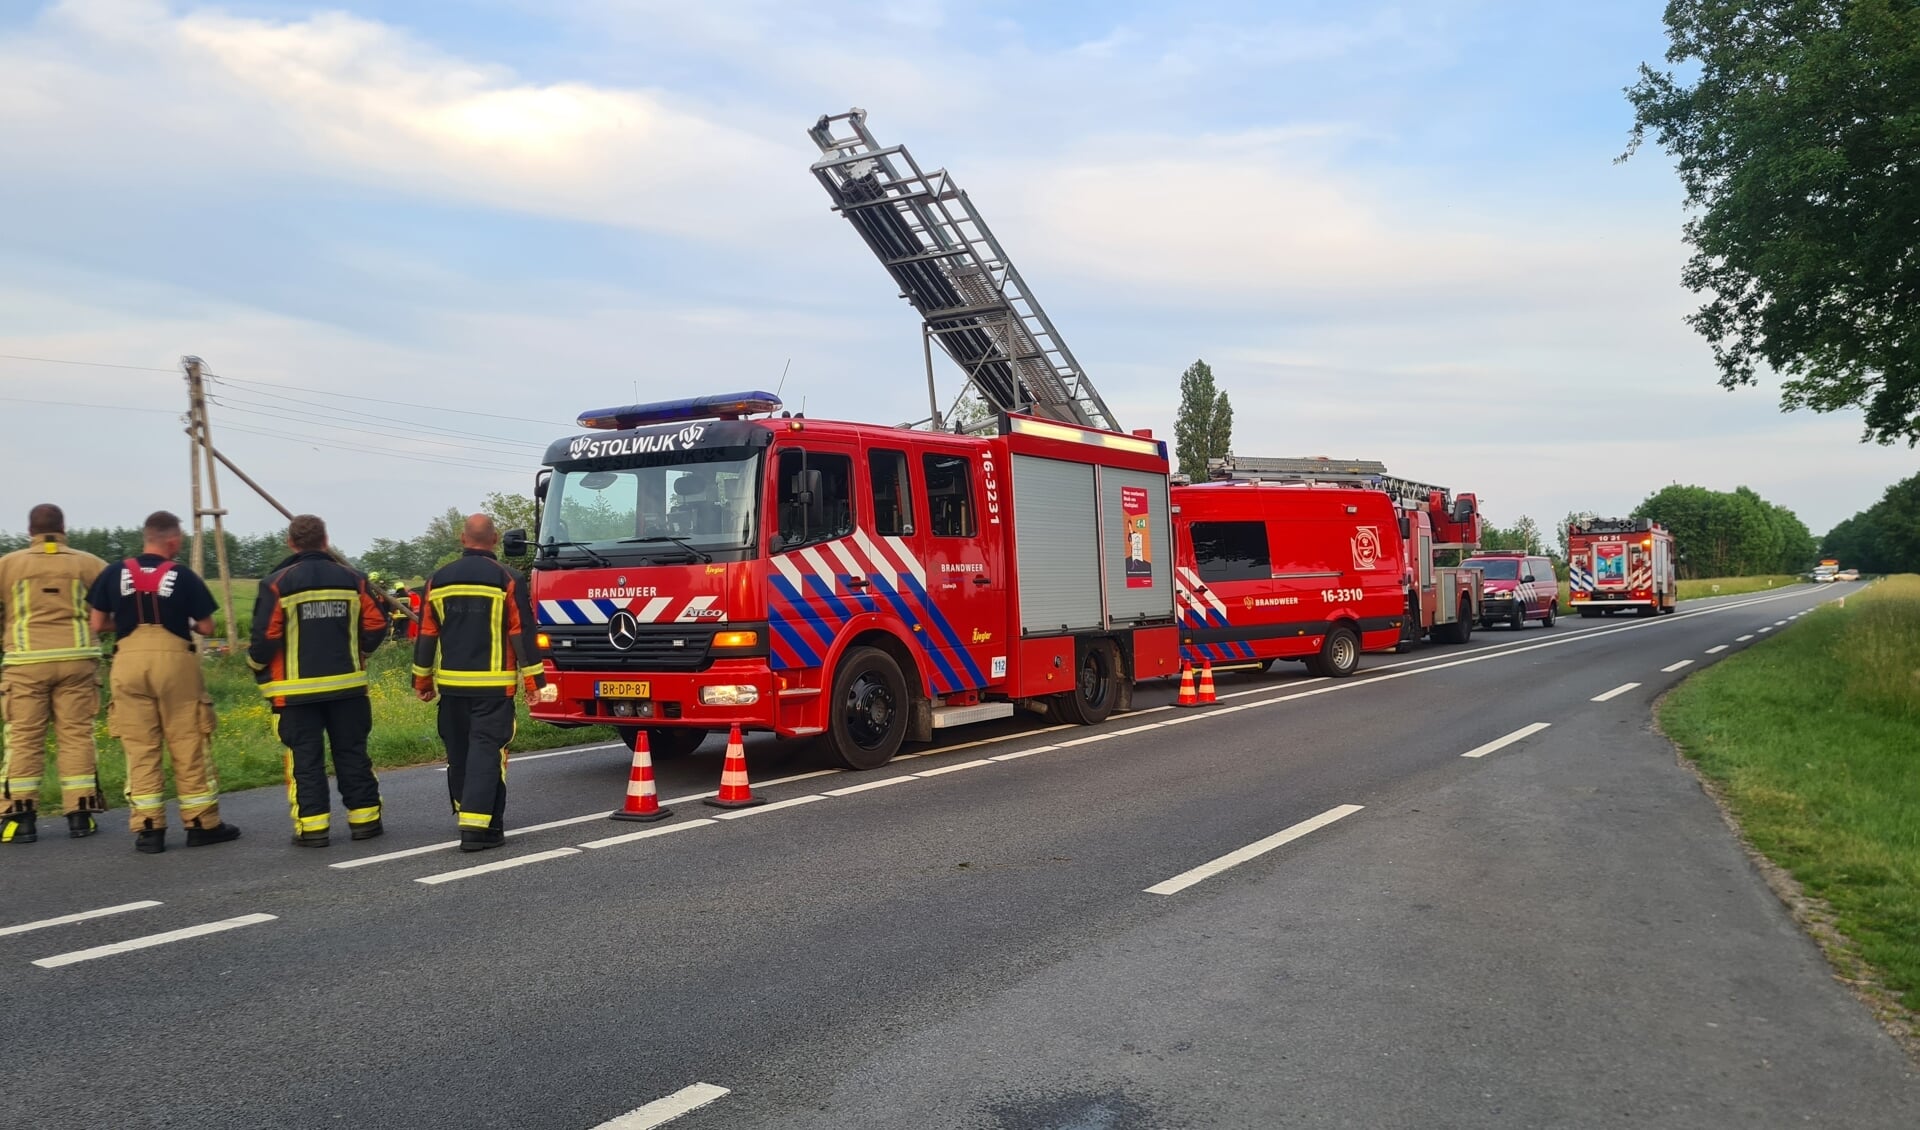 STOLWIJK - Zondagavond 22 mei rond 20.30 uur heeft een ernstig ongeval plaatsgevonden 